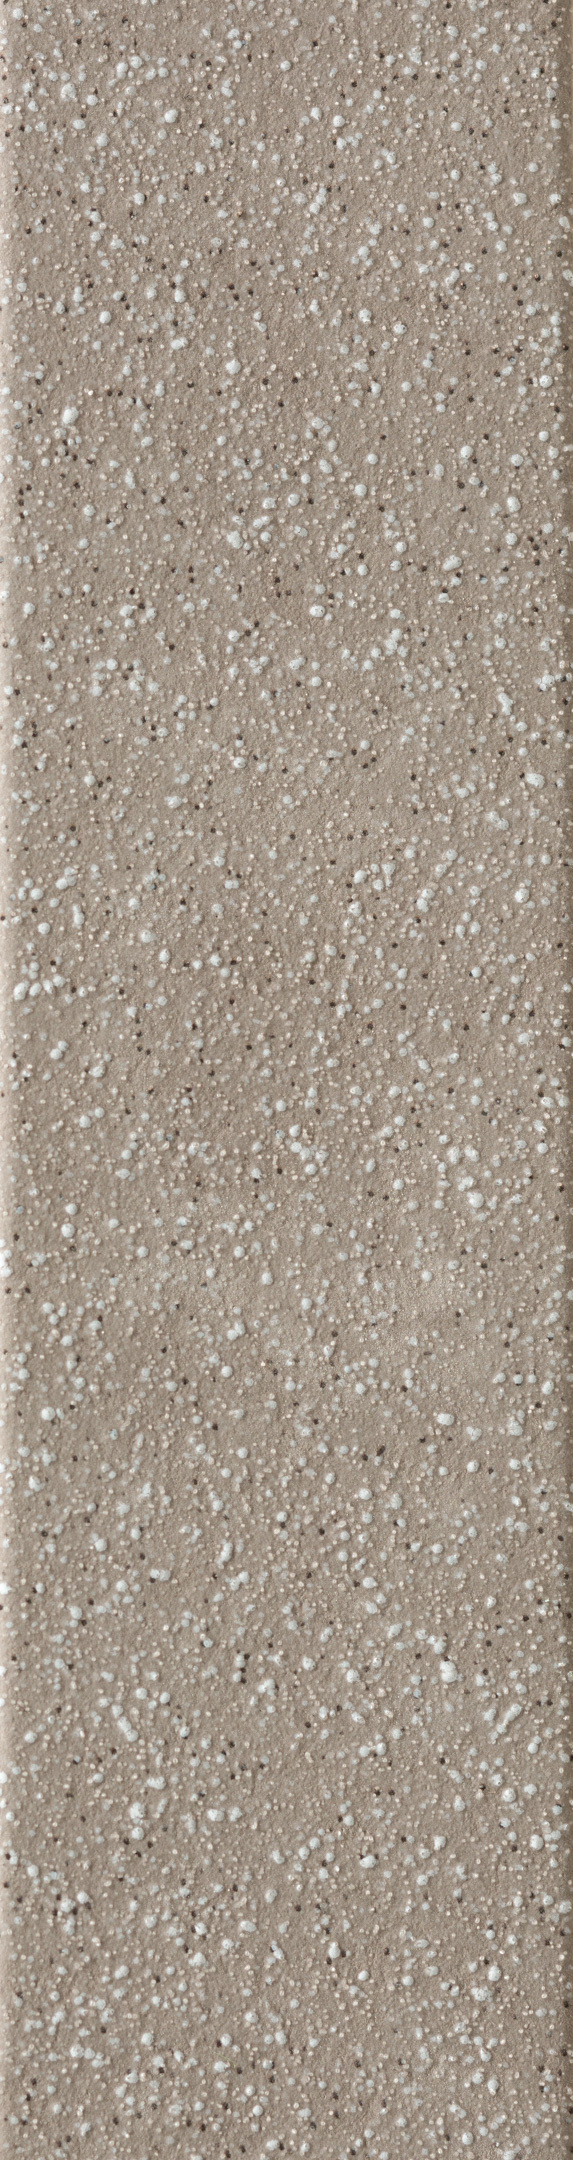 фото Клинкерная плитка керамин мичиган 3 бежевая 24,5х6,5 см (34 шт.=0,54 кв.м)